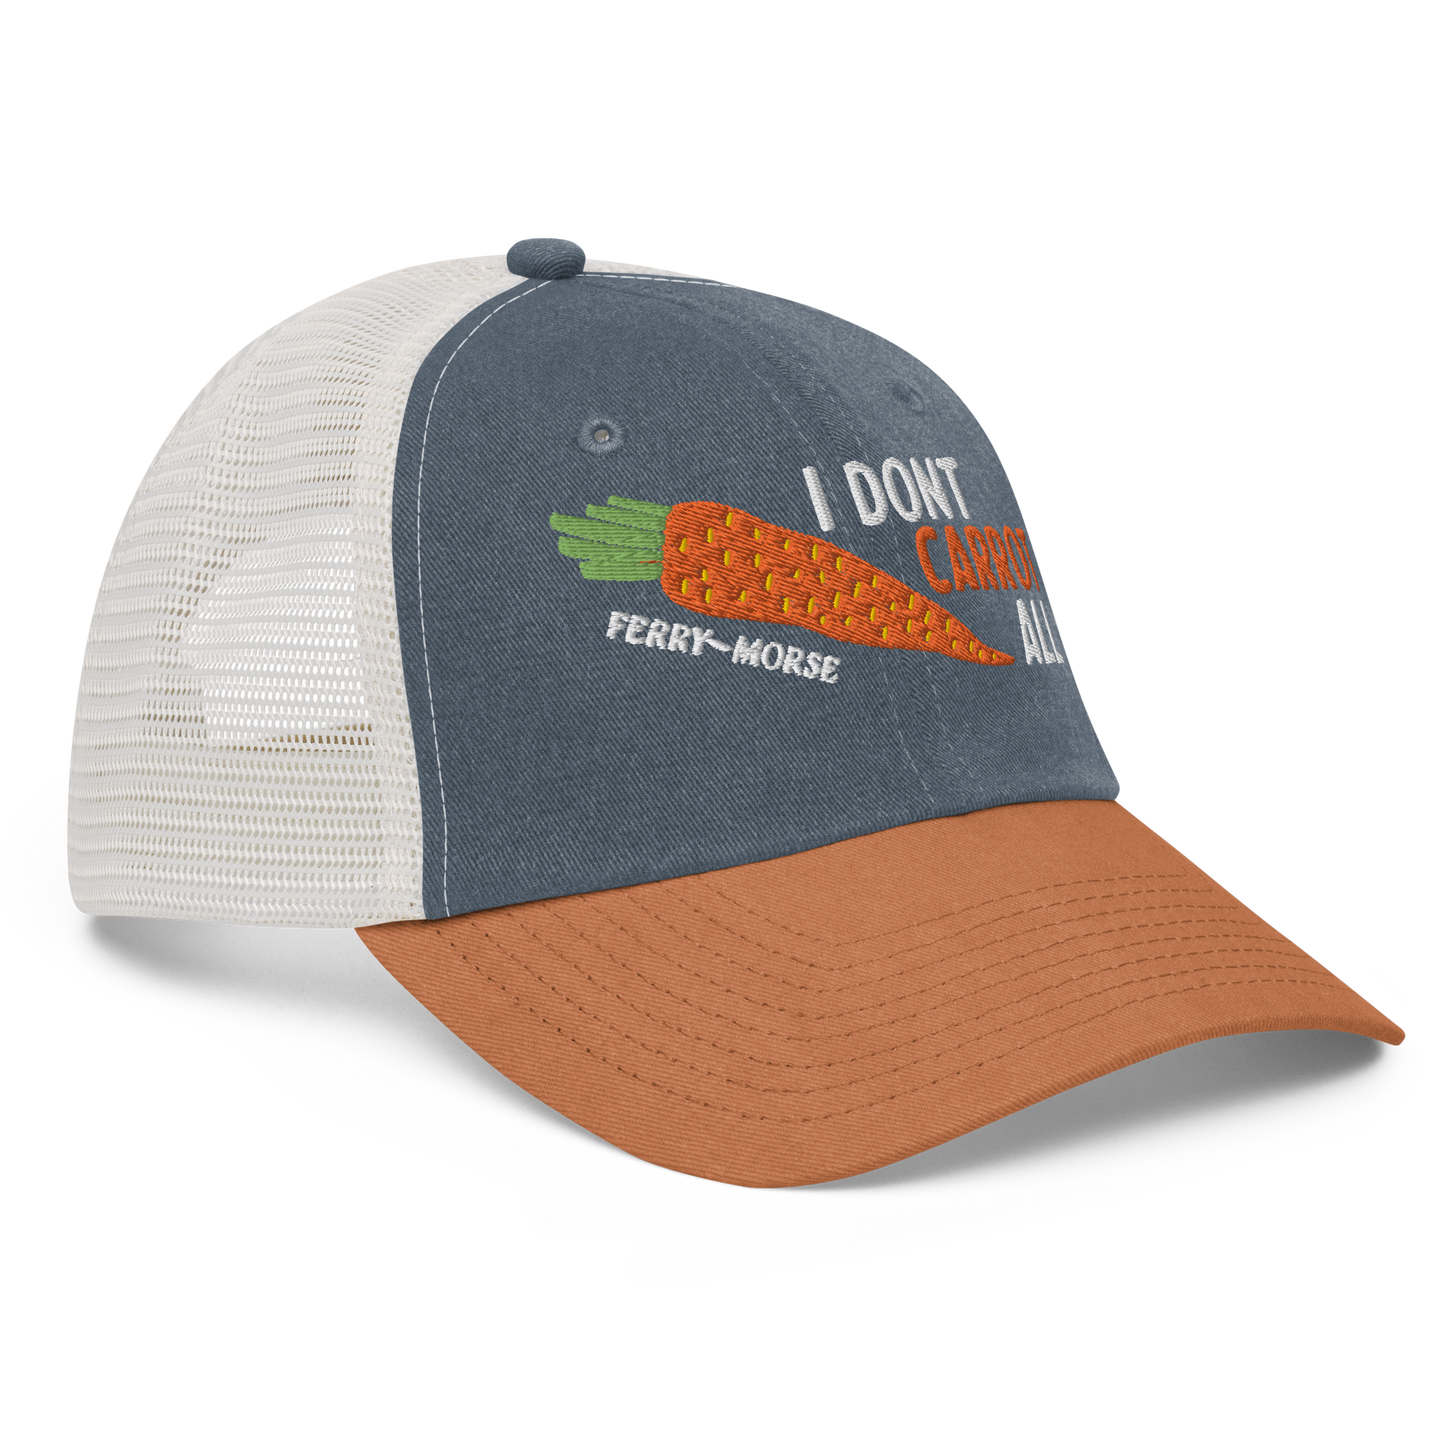 "I Don't Carrot All" Trucker Hat